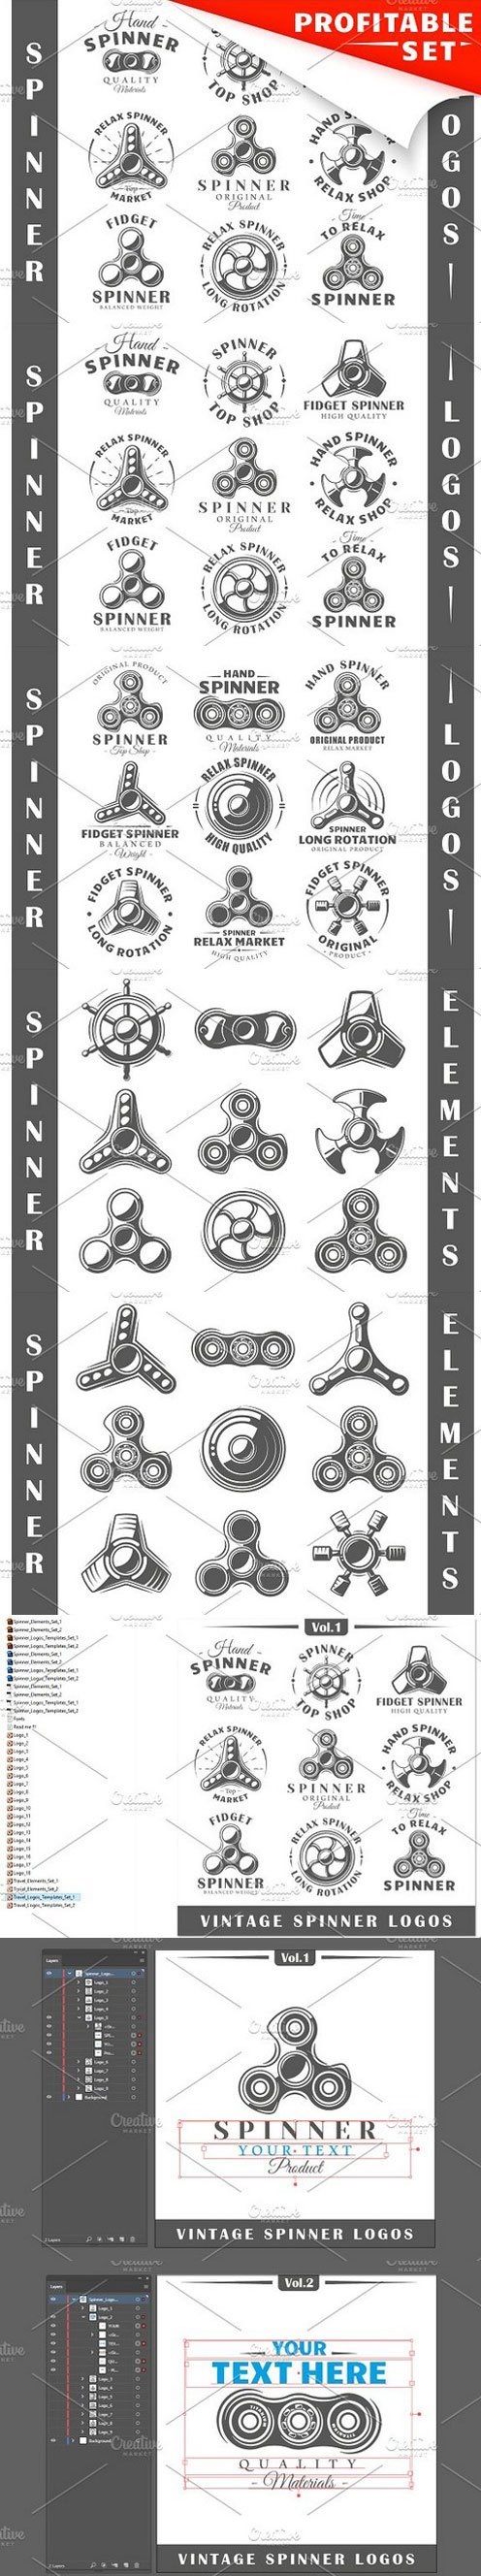 18 Spinner Logos Templates 1643547